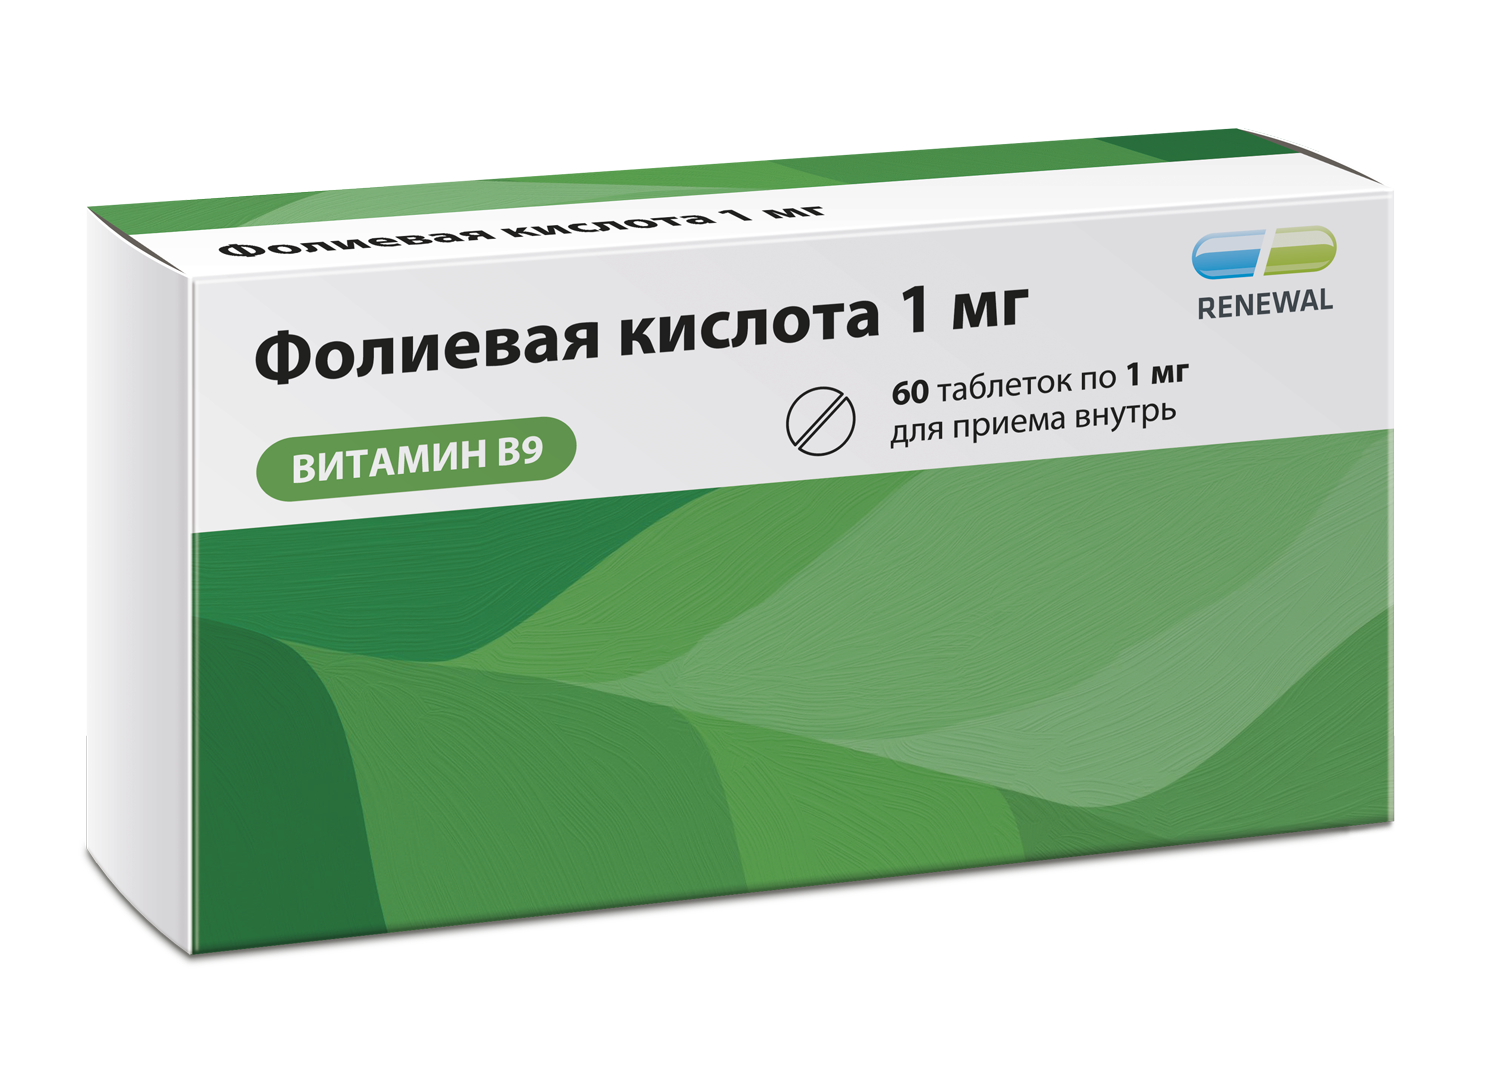 Фолиевая кислота 1 мг ТМ Renewal® - старт продаж в аптеках РФ